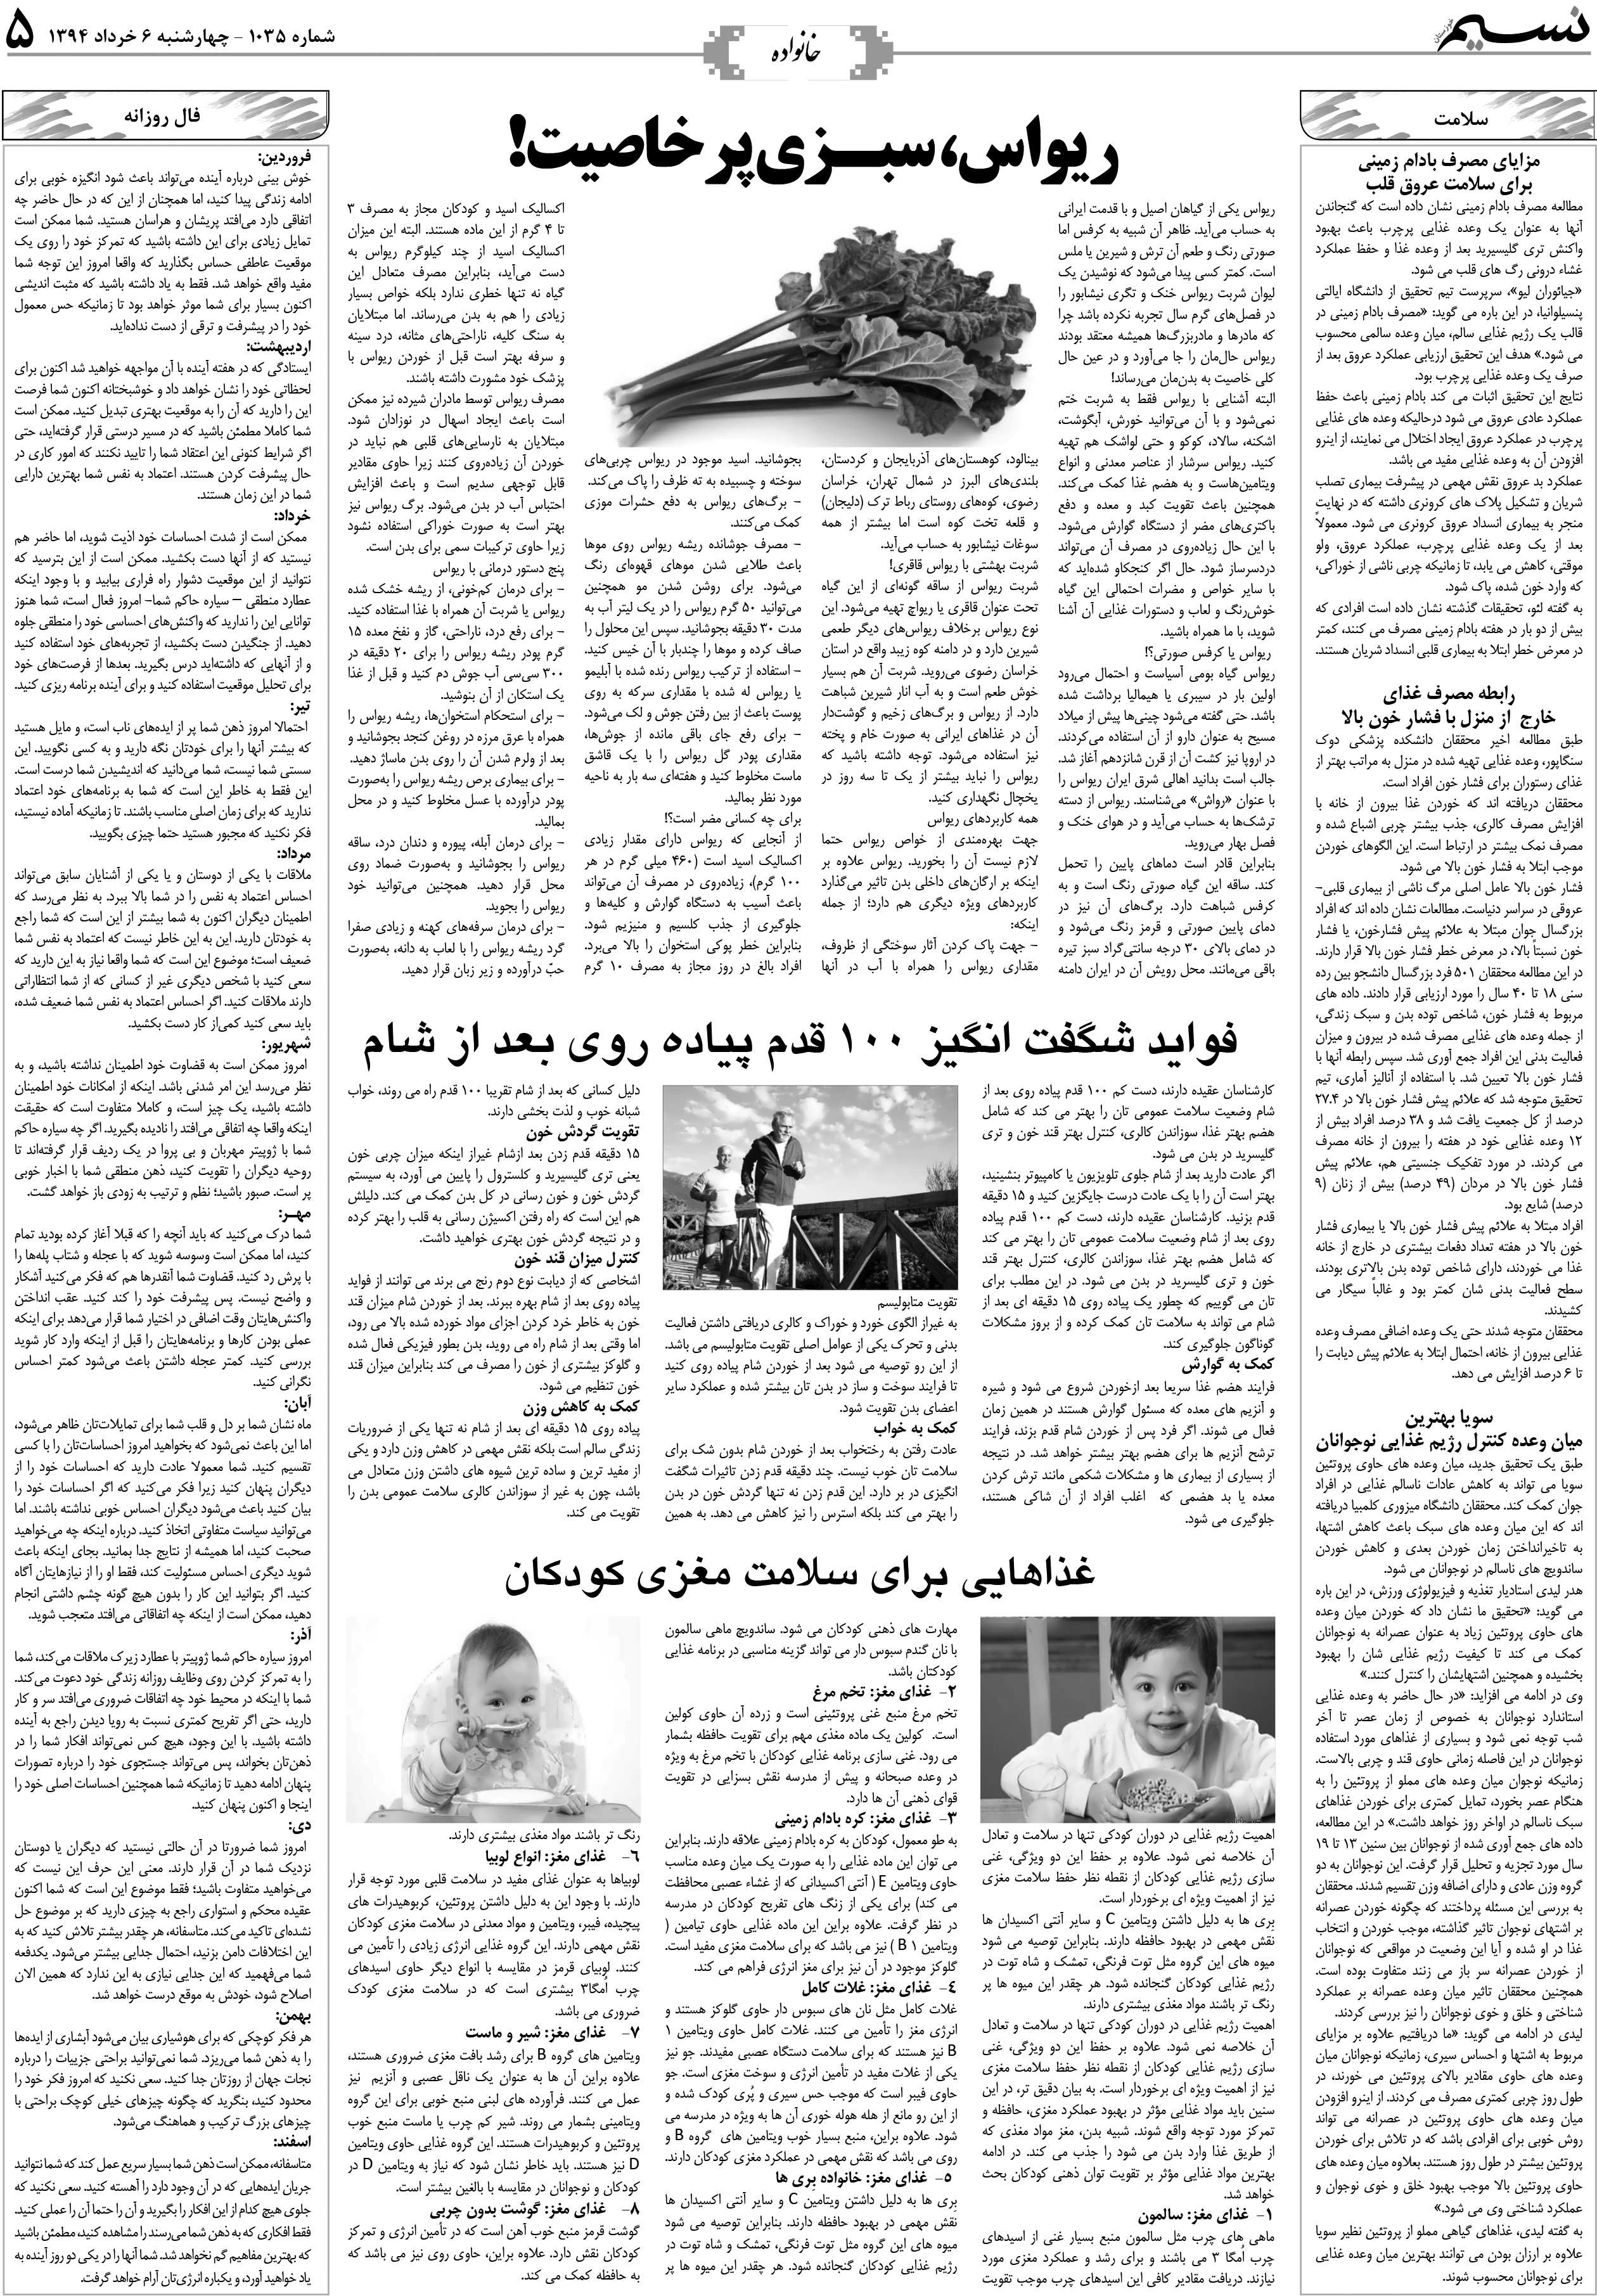 صفحه خانواده روزنامه نسیم شماره 1035